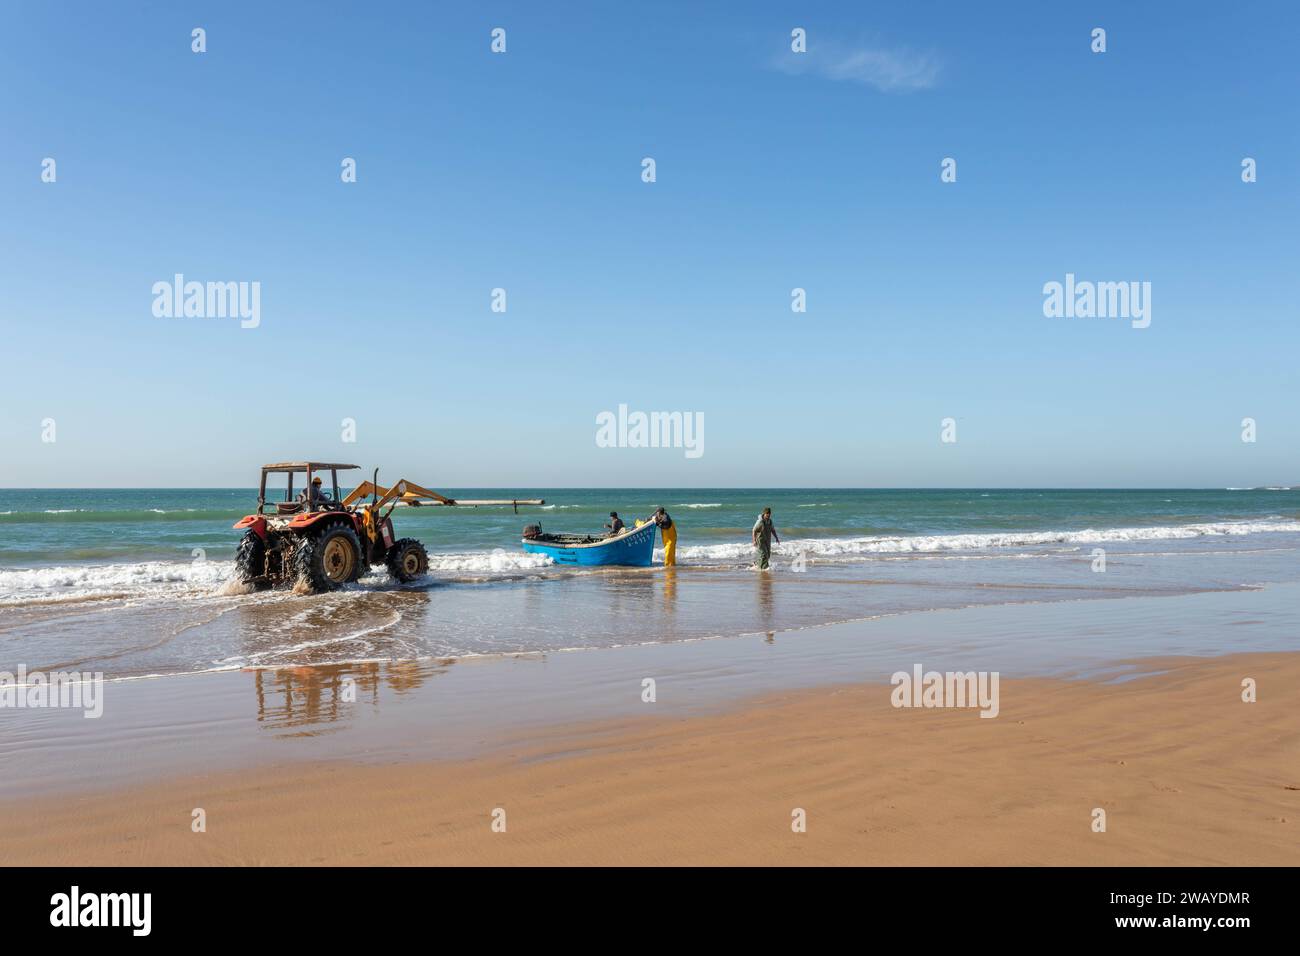 Un tractor está en la playa, listo para levantar un pequeño barco de pesca azul de madera del agua después de un viaje de pesca. Taghazout, Marruecos, Norte de África. Foto de stock